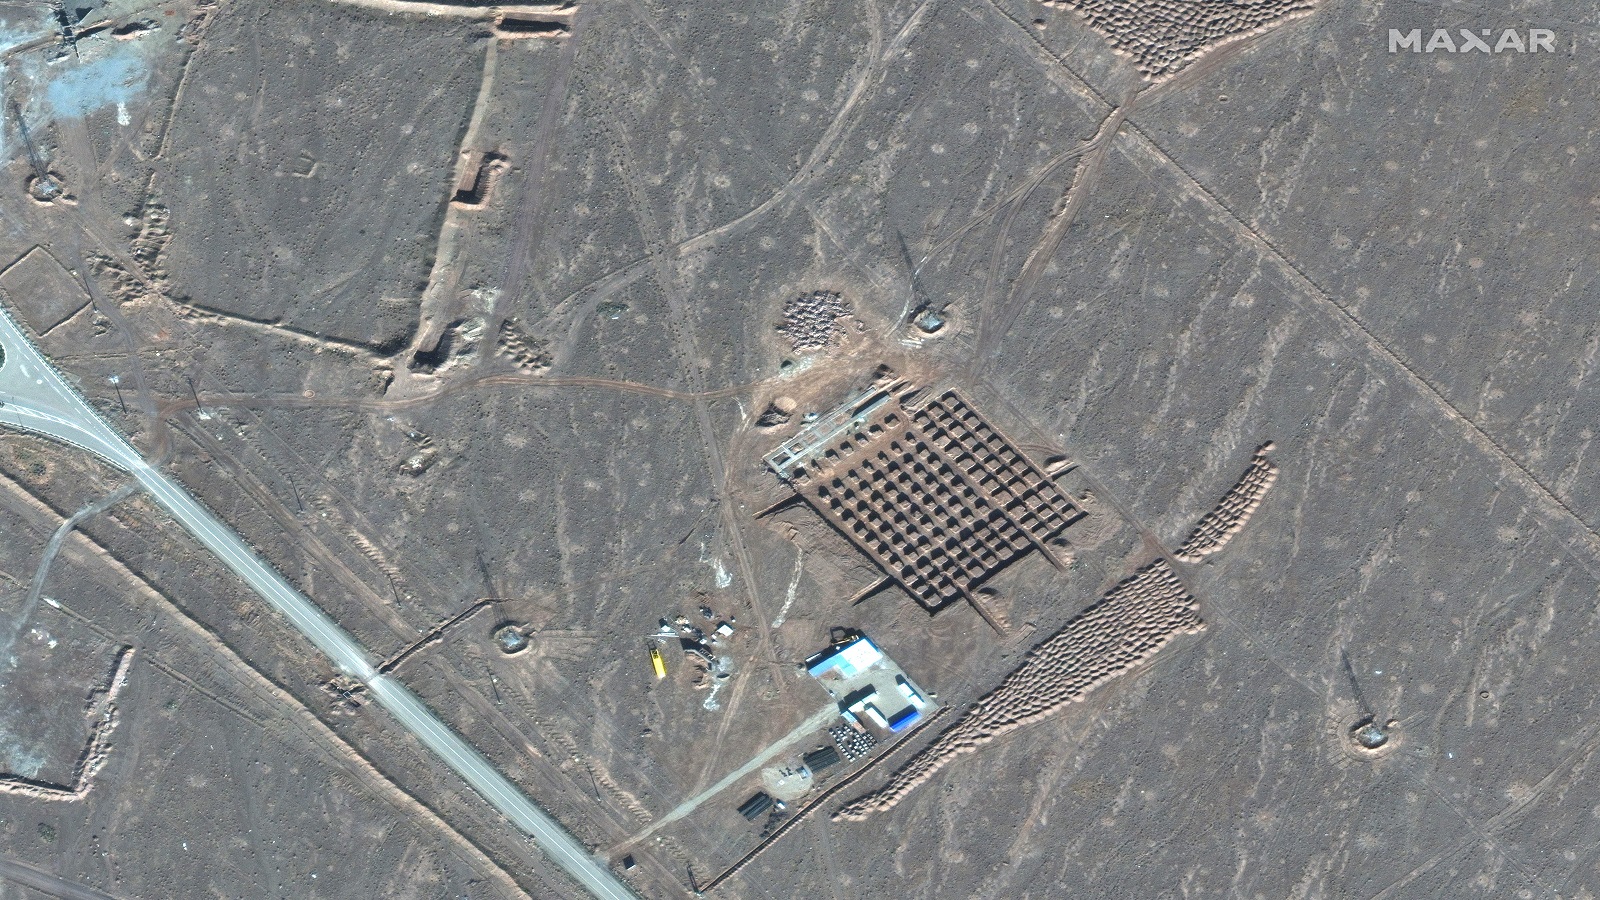 إيران تعزز تخصيب اليورانيوم في "فوردو"..بأجهزة طرد متطورة